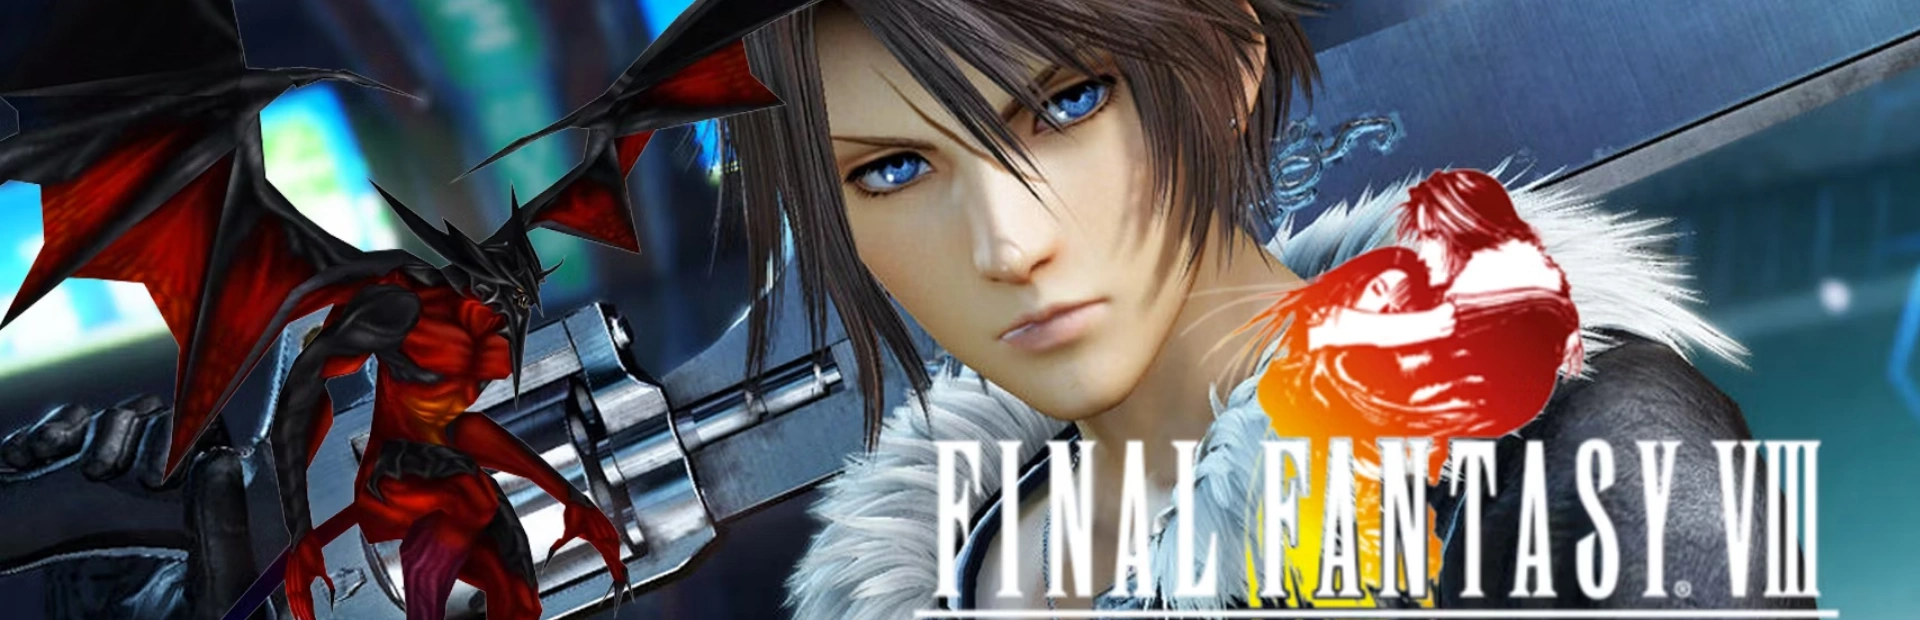 Final Fantasy VIII Remastered.banner3